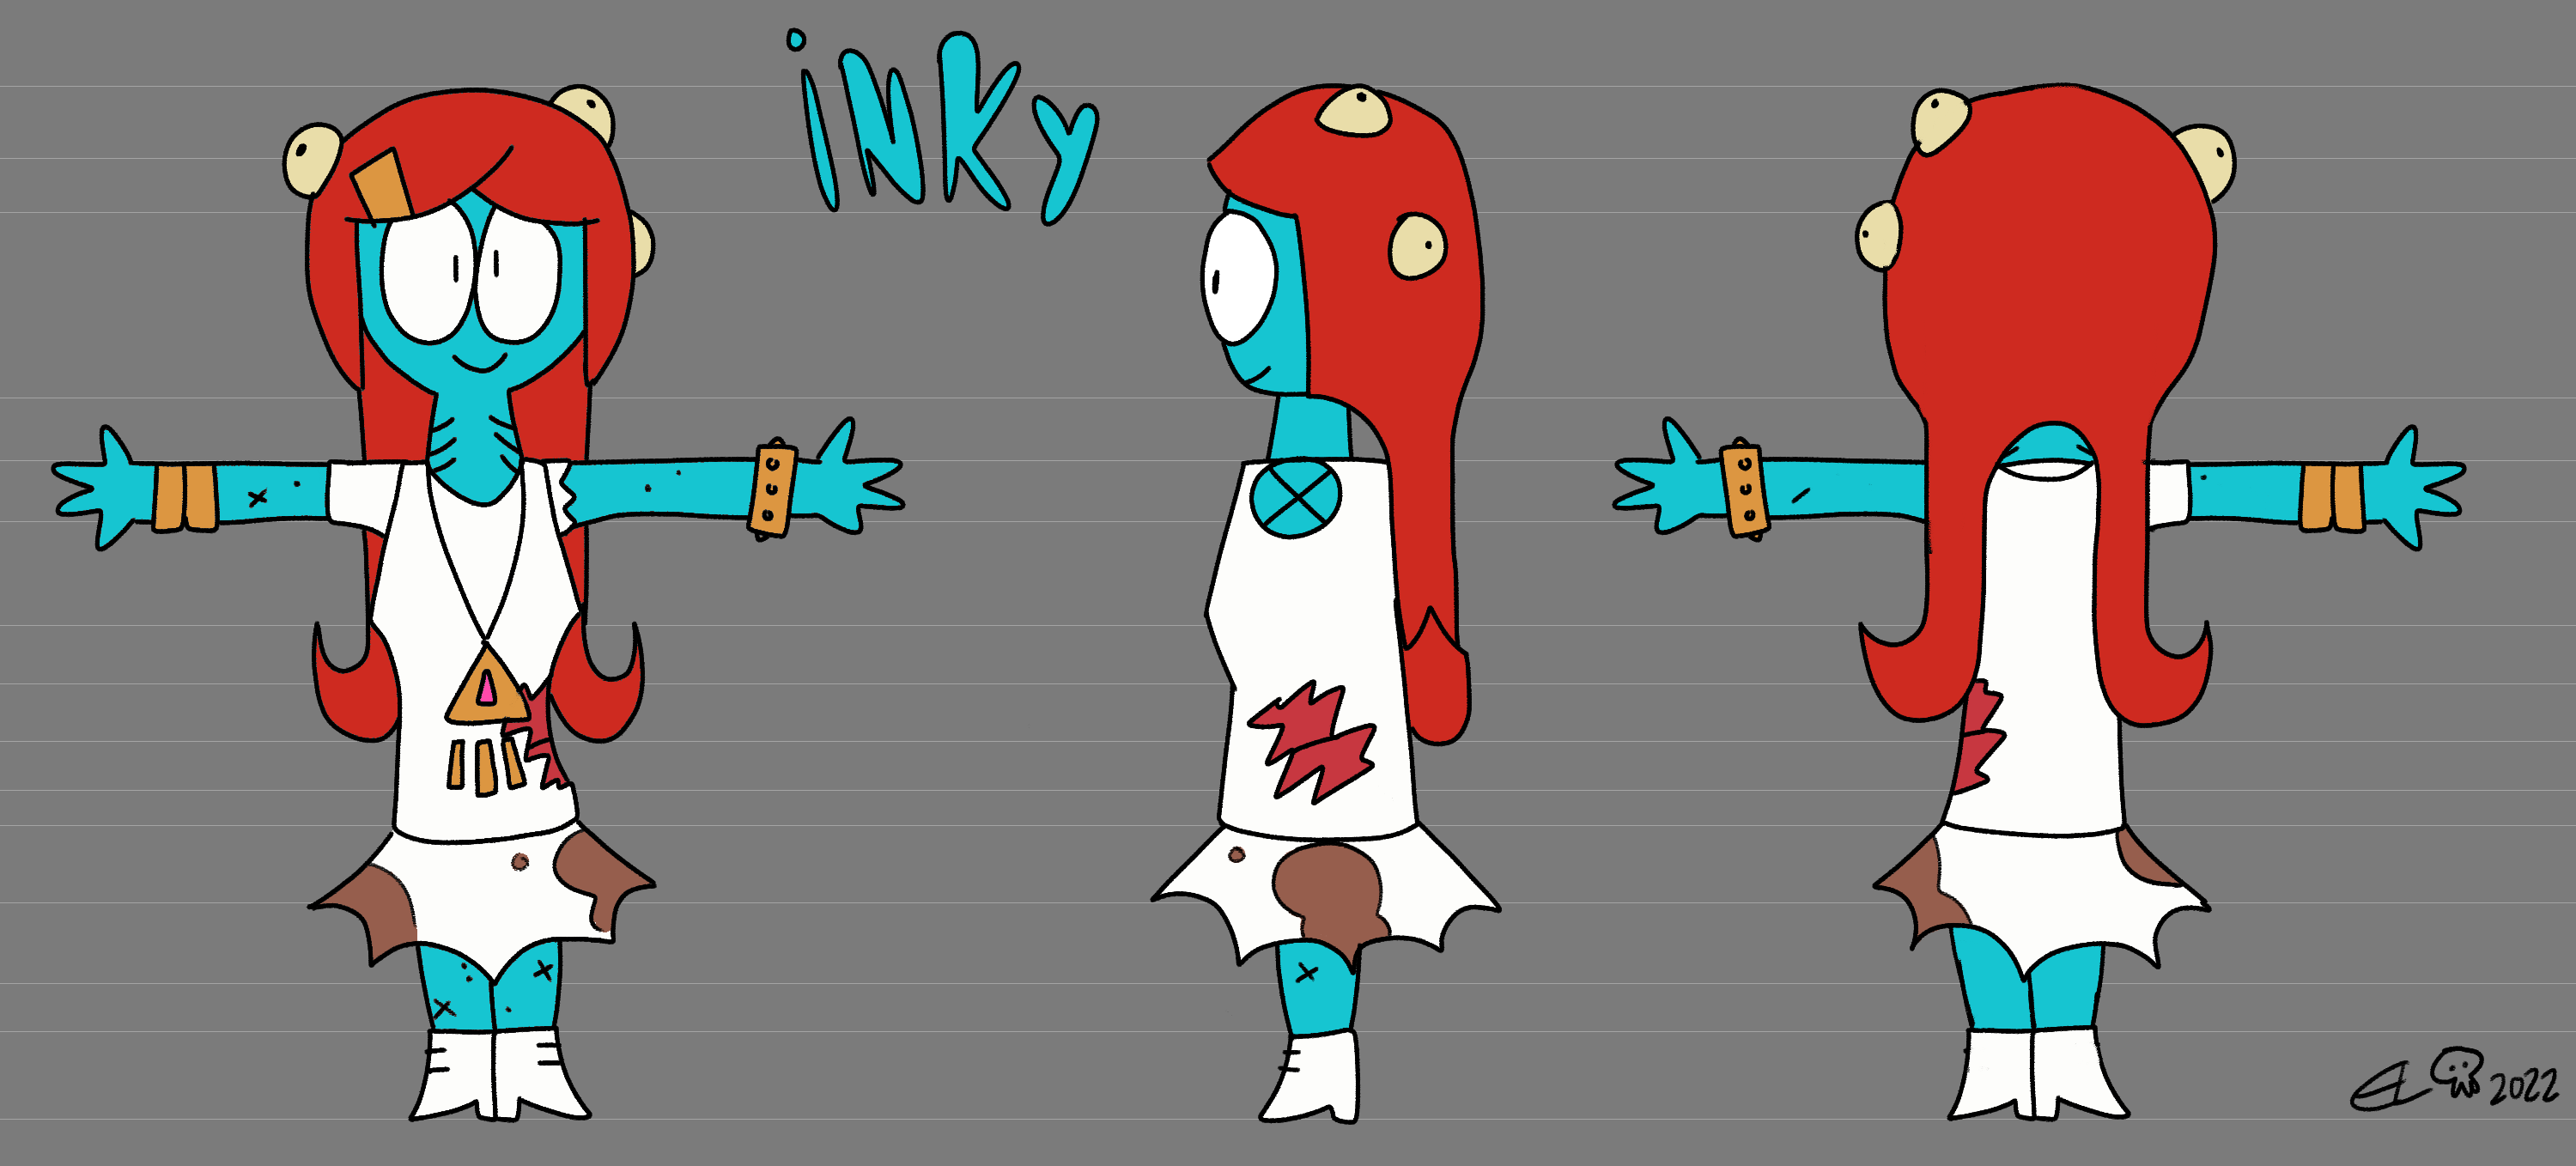 Inky character design turnaround